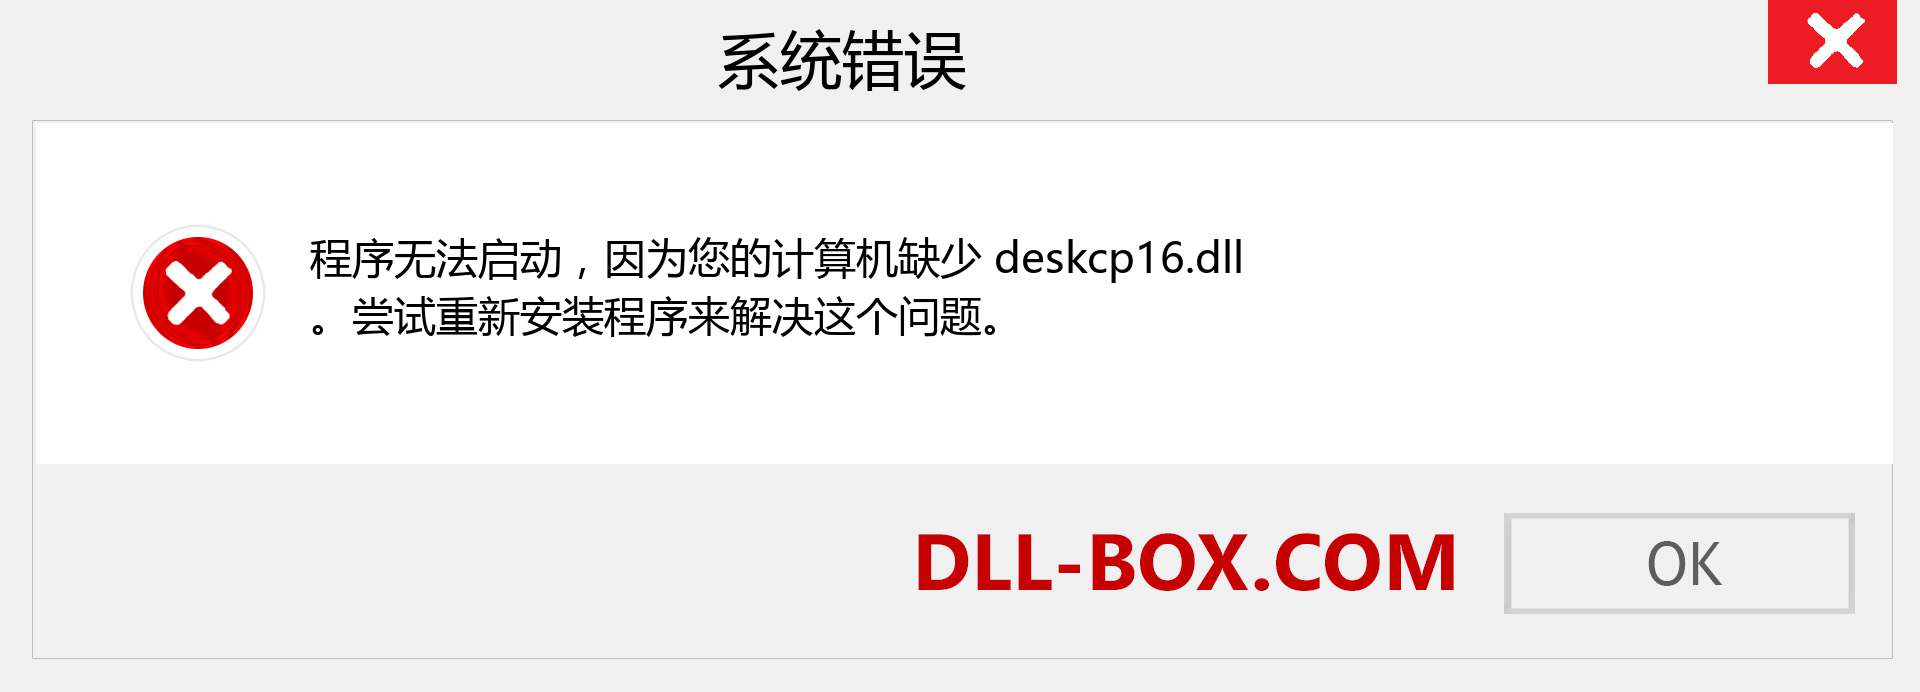 deskcp16.dll 文件丢失？。 适用于 Windows 7、8、10 的下载 - 修复 Windows、照片、图像上的 deskcp16 dll 丢失错误